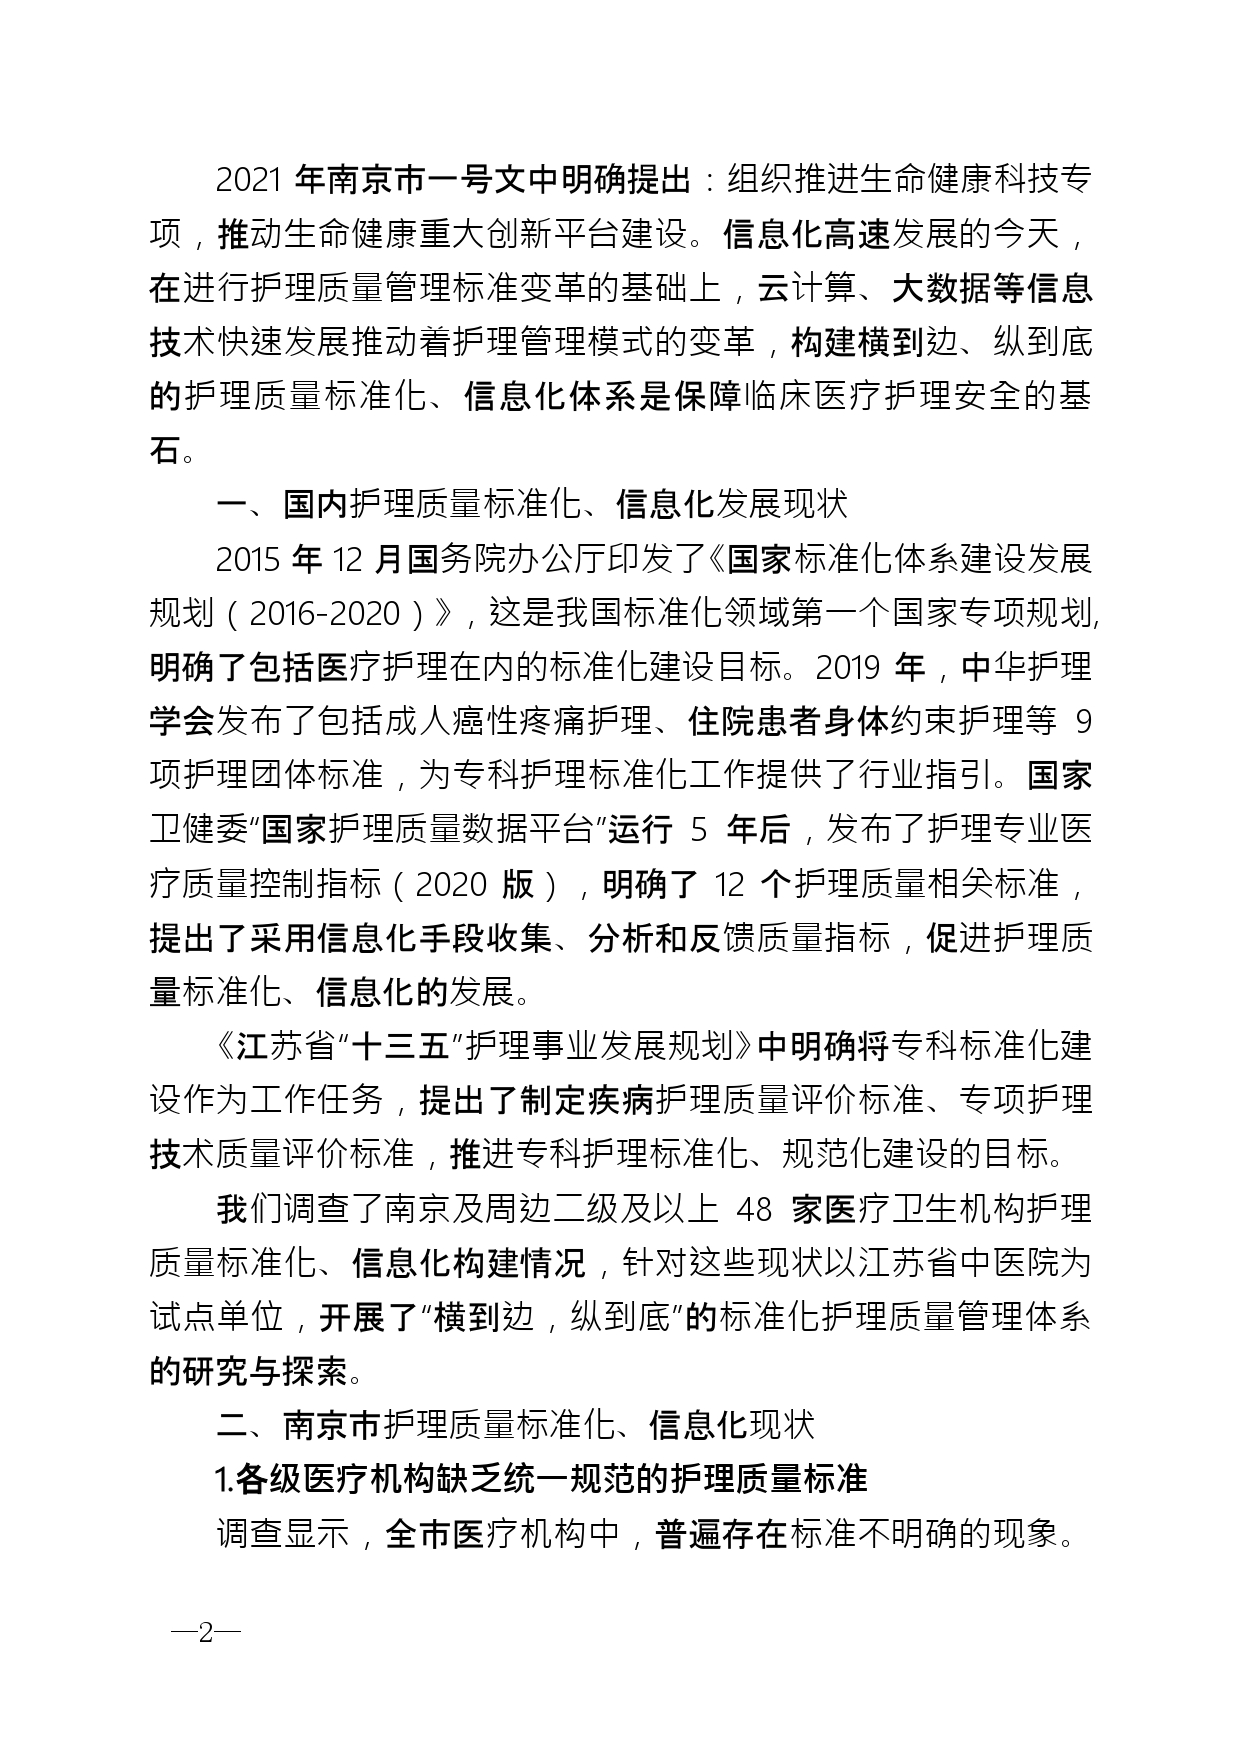 2021年第2期（关于构建南京地区护理体系的建议）_page-0002.jpg